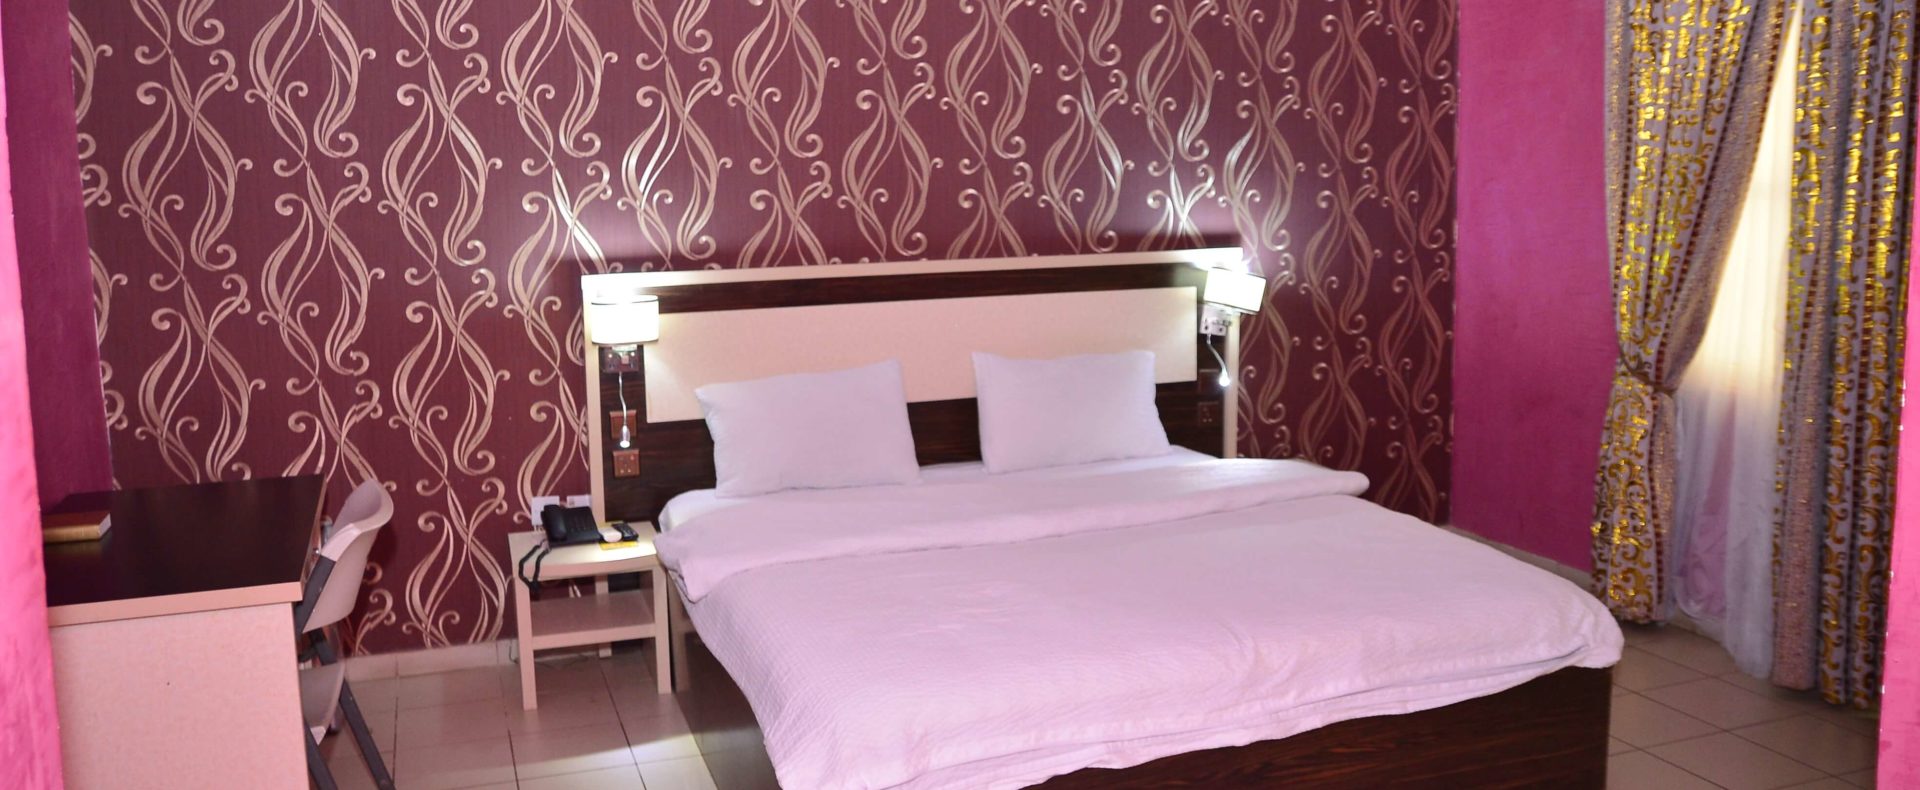 Hotel Standard In Ilawe Ekiti Nigeria